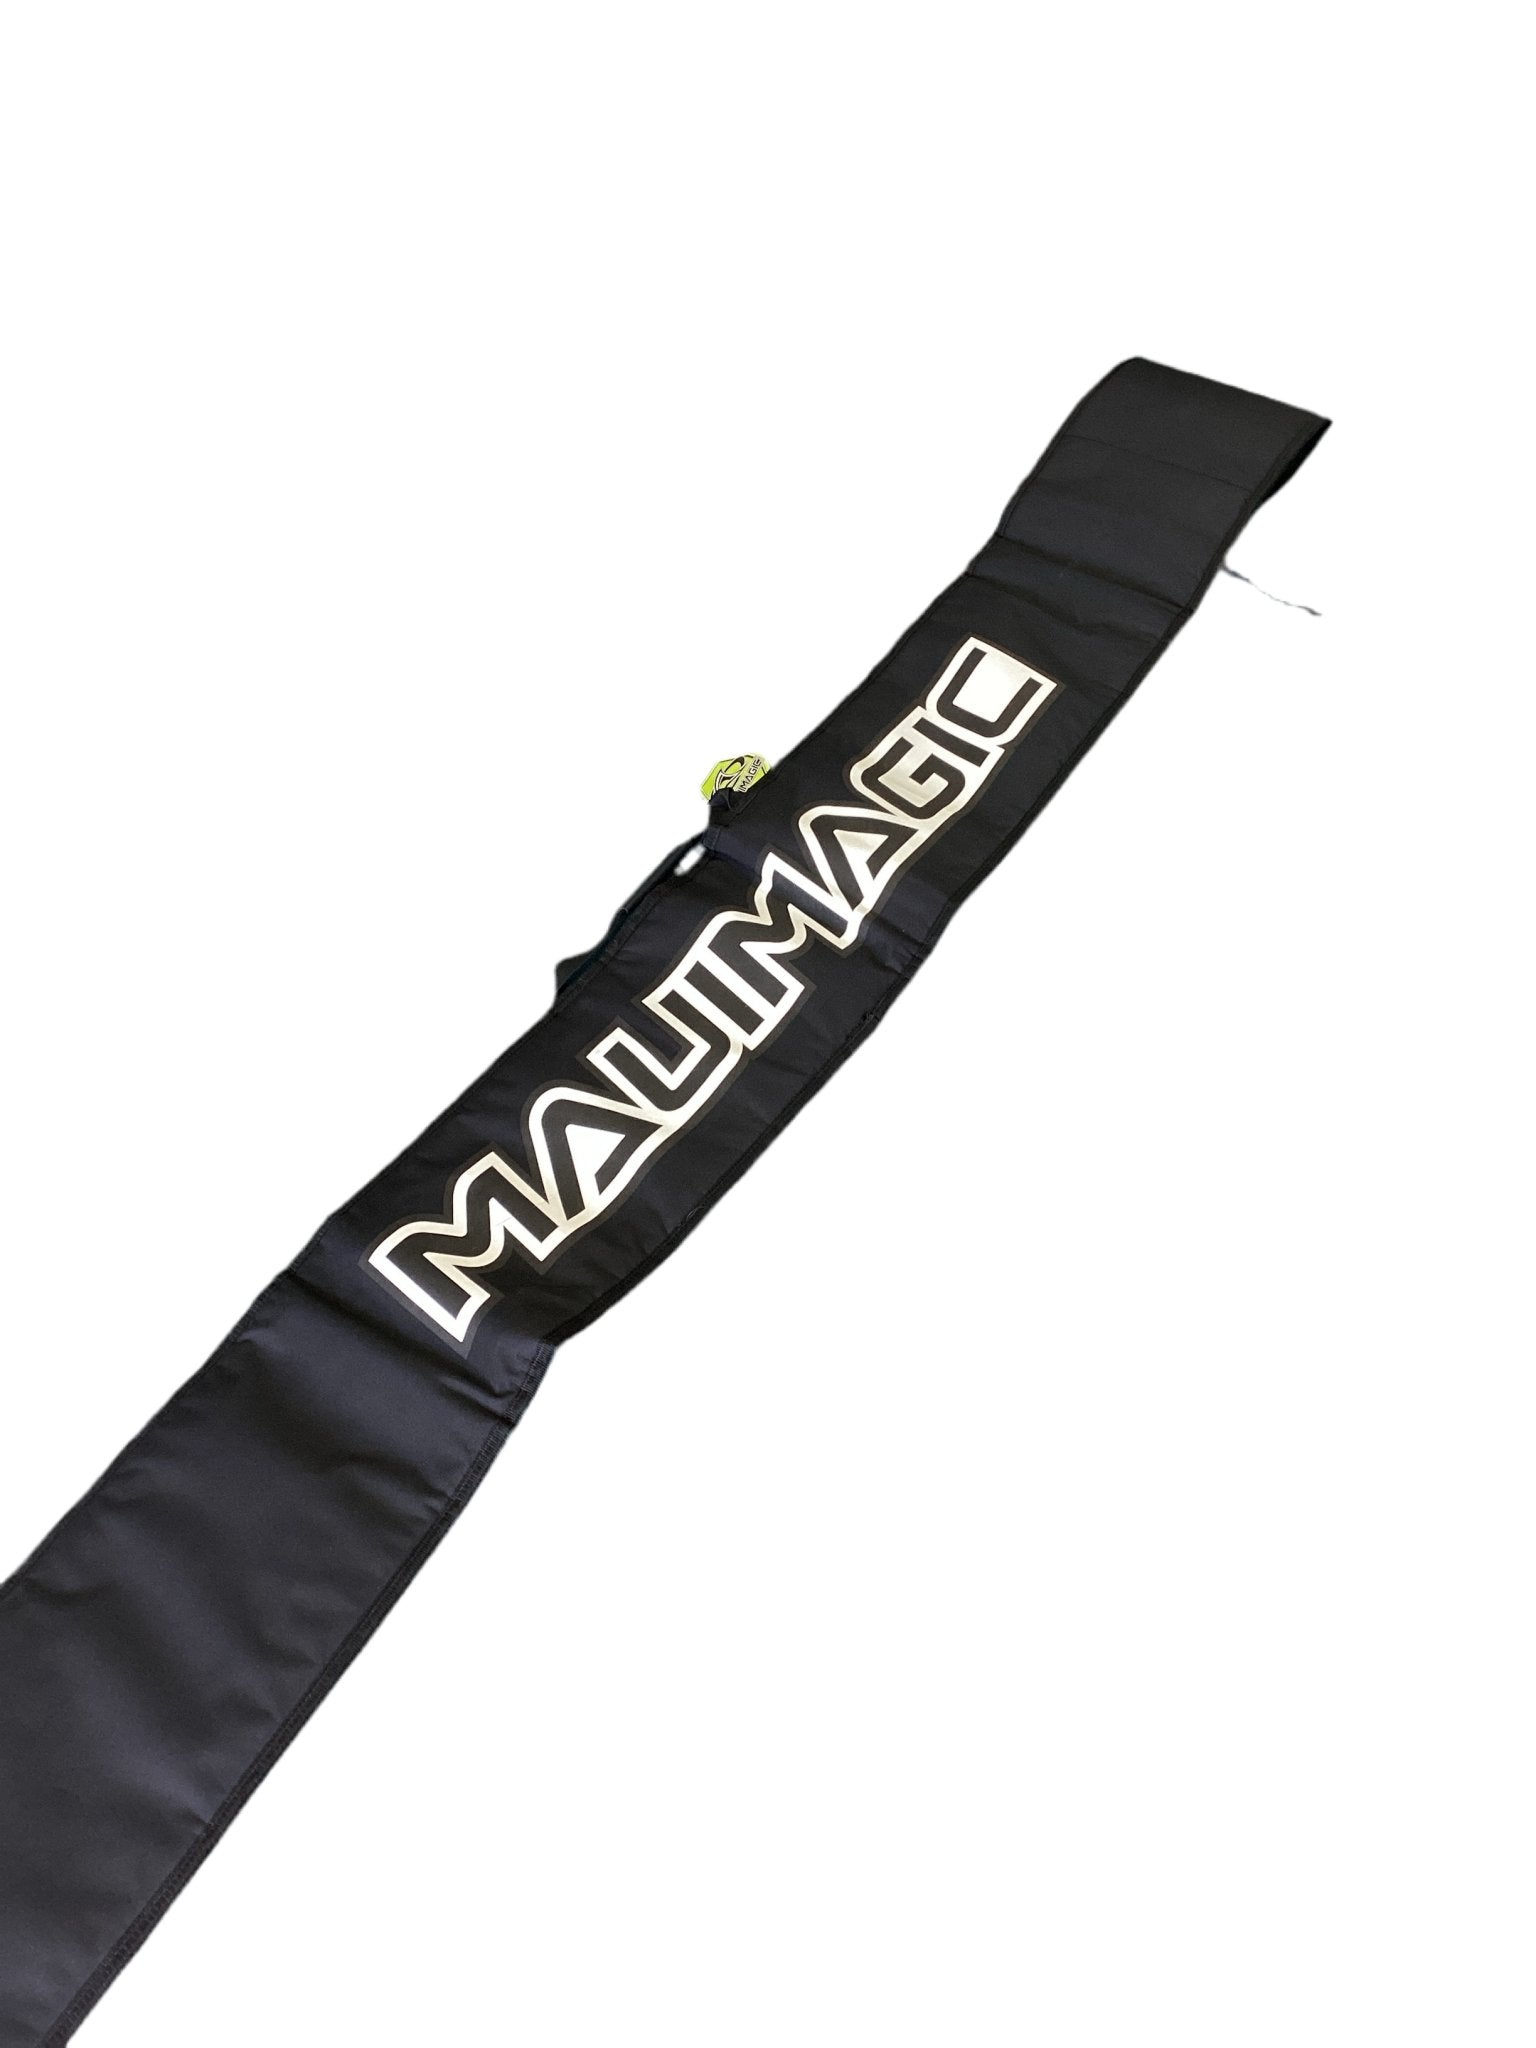 MauiMagic Windsurfing Mast bag - Worthing Watersports - Bags - Mauimagic